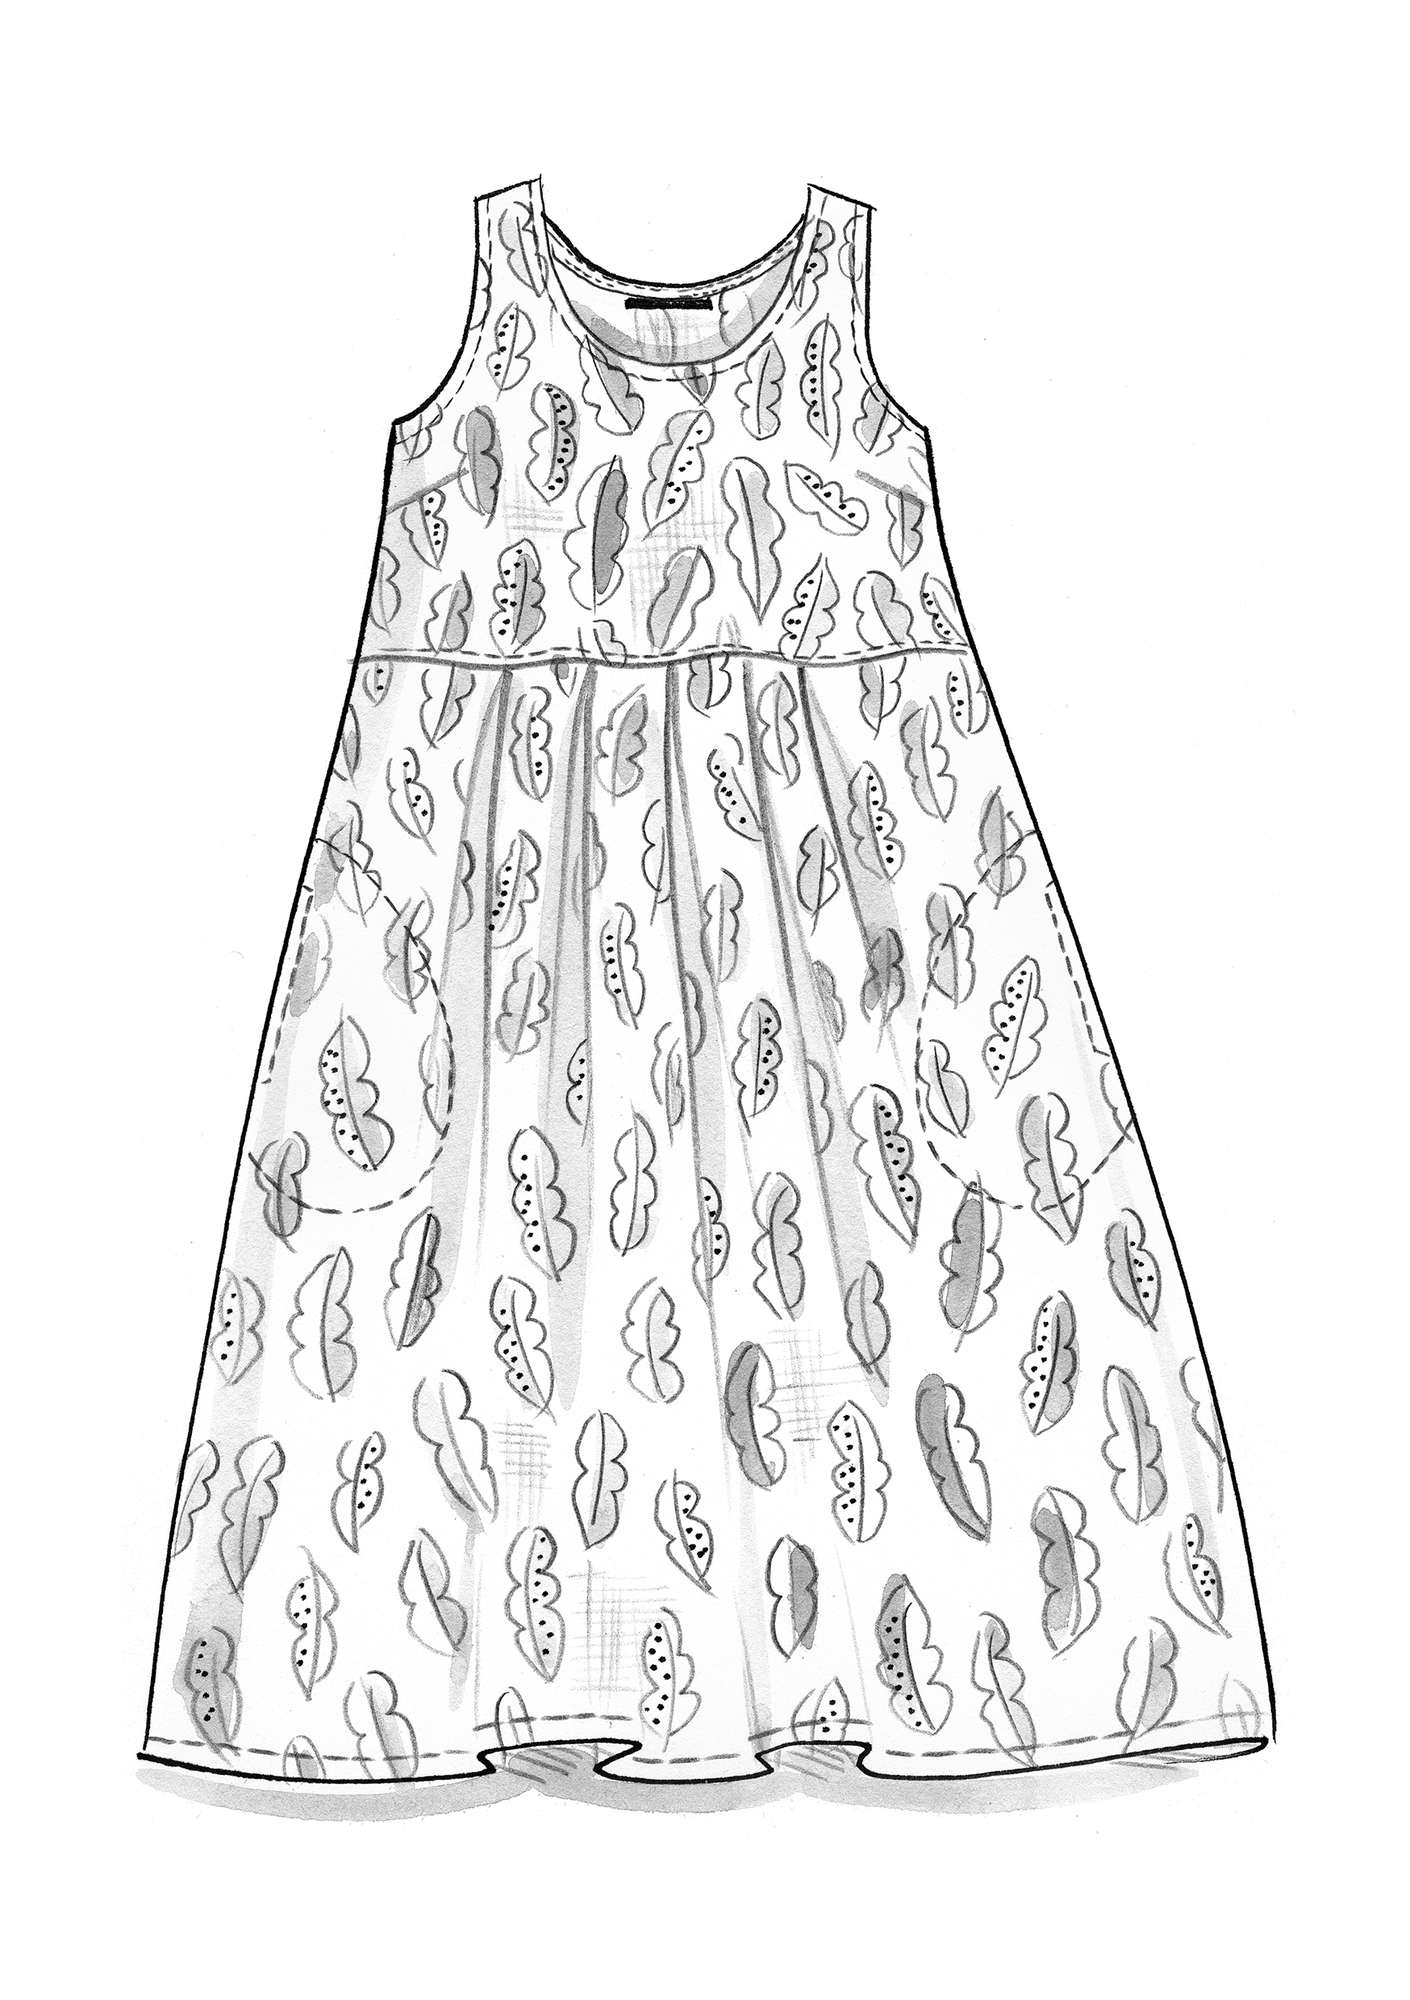 Vevd kjole «Agave» i økologisk bomull vanilje